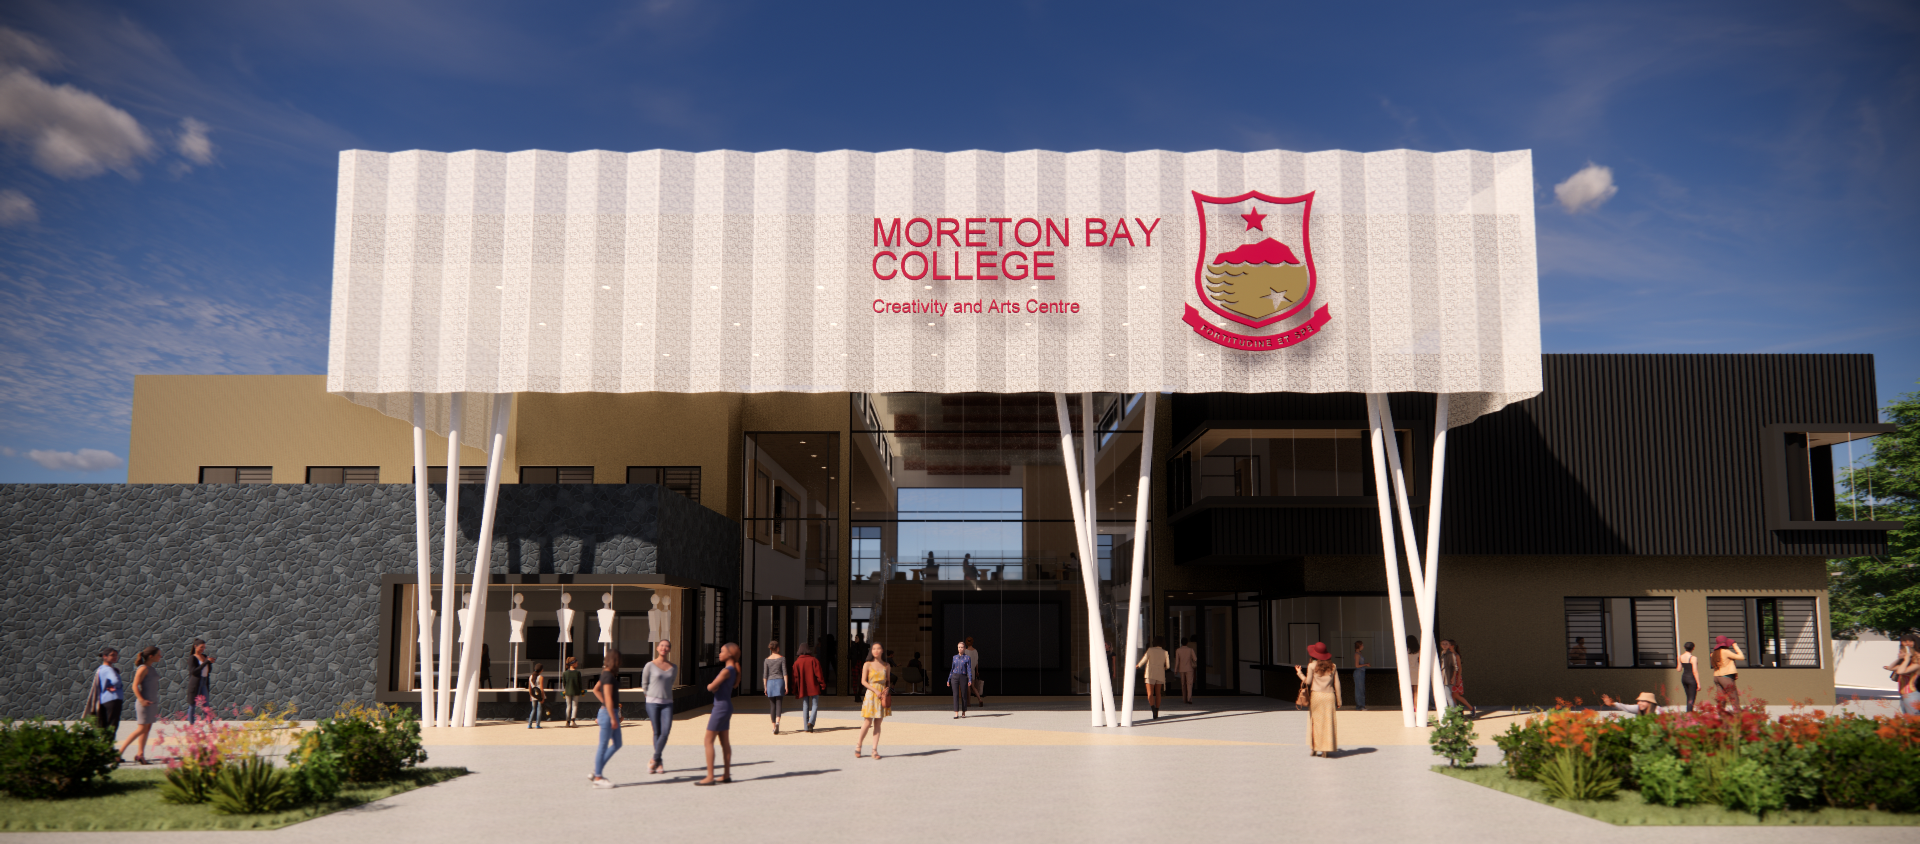 Moreton Bay College Creativity & Arts Centre